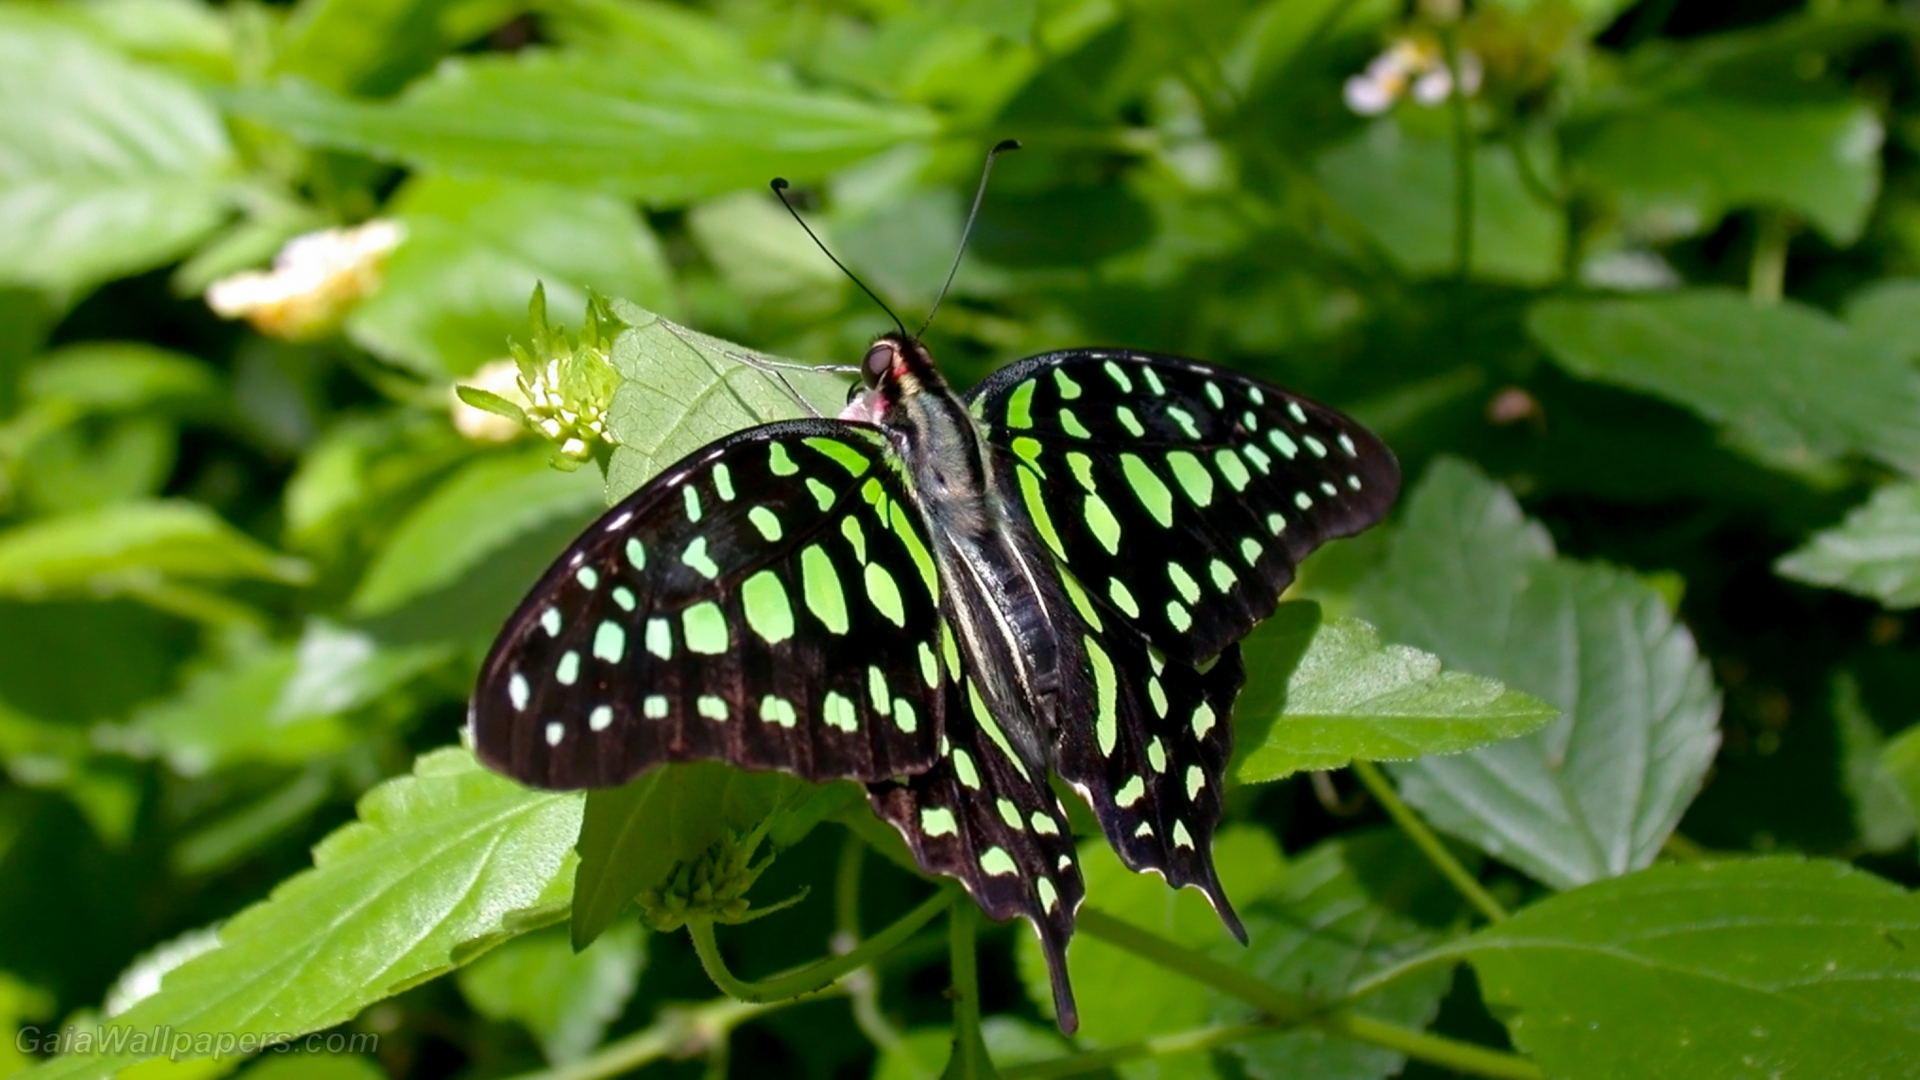 Mottled green butterfly - Free desktop wallpapers